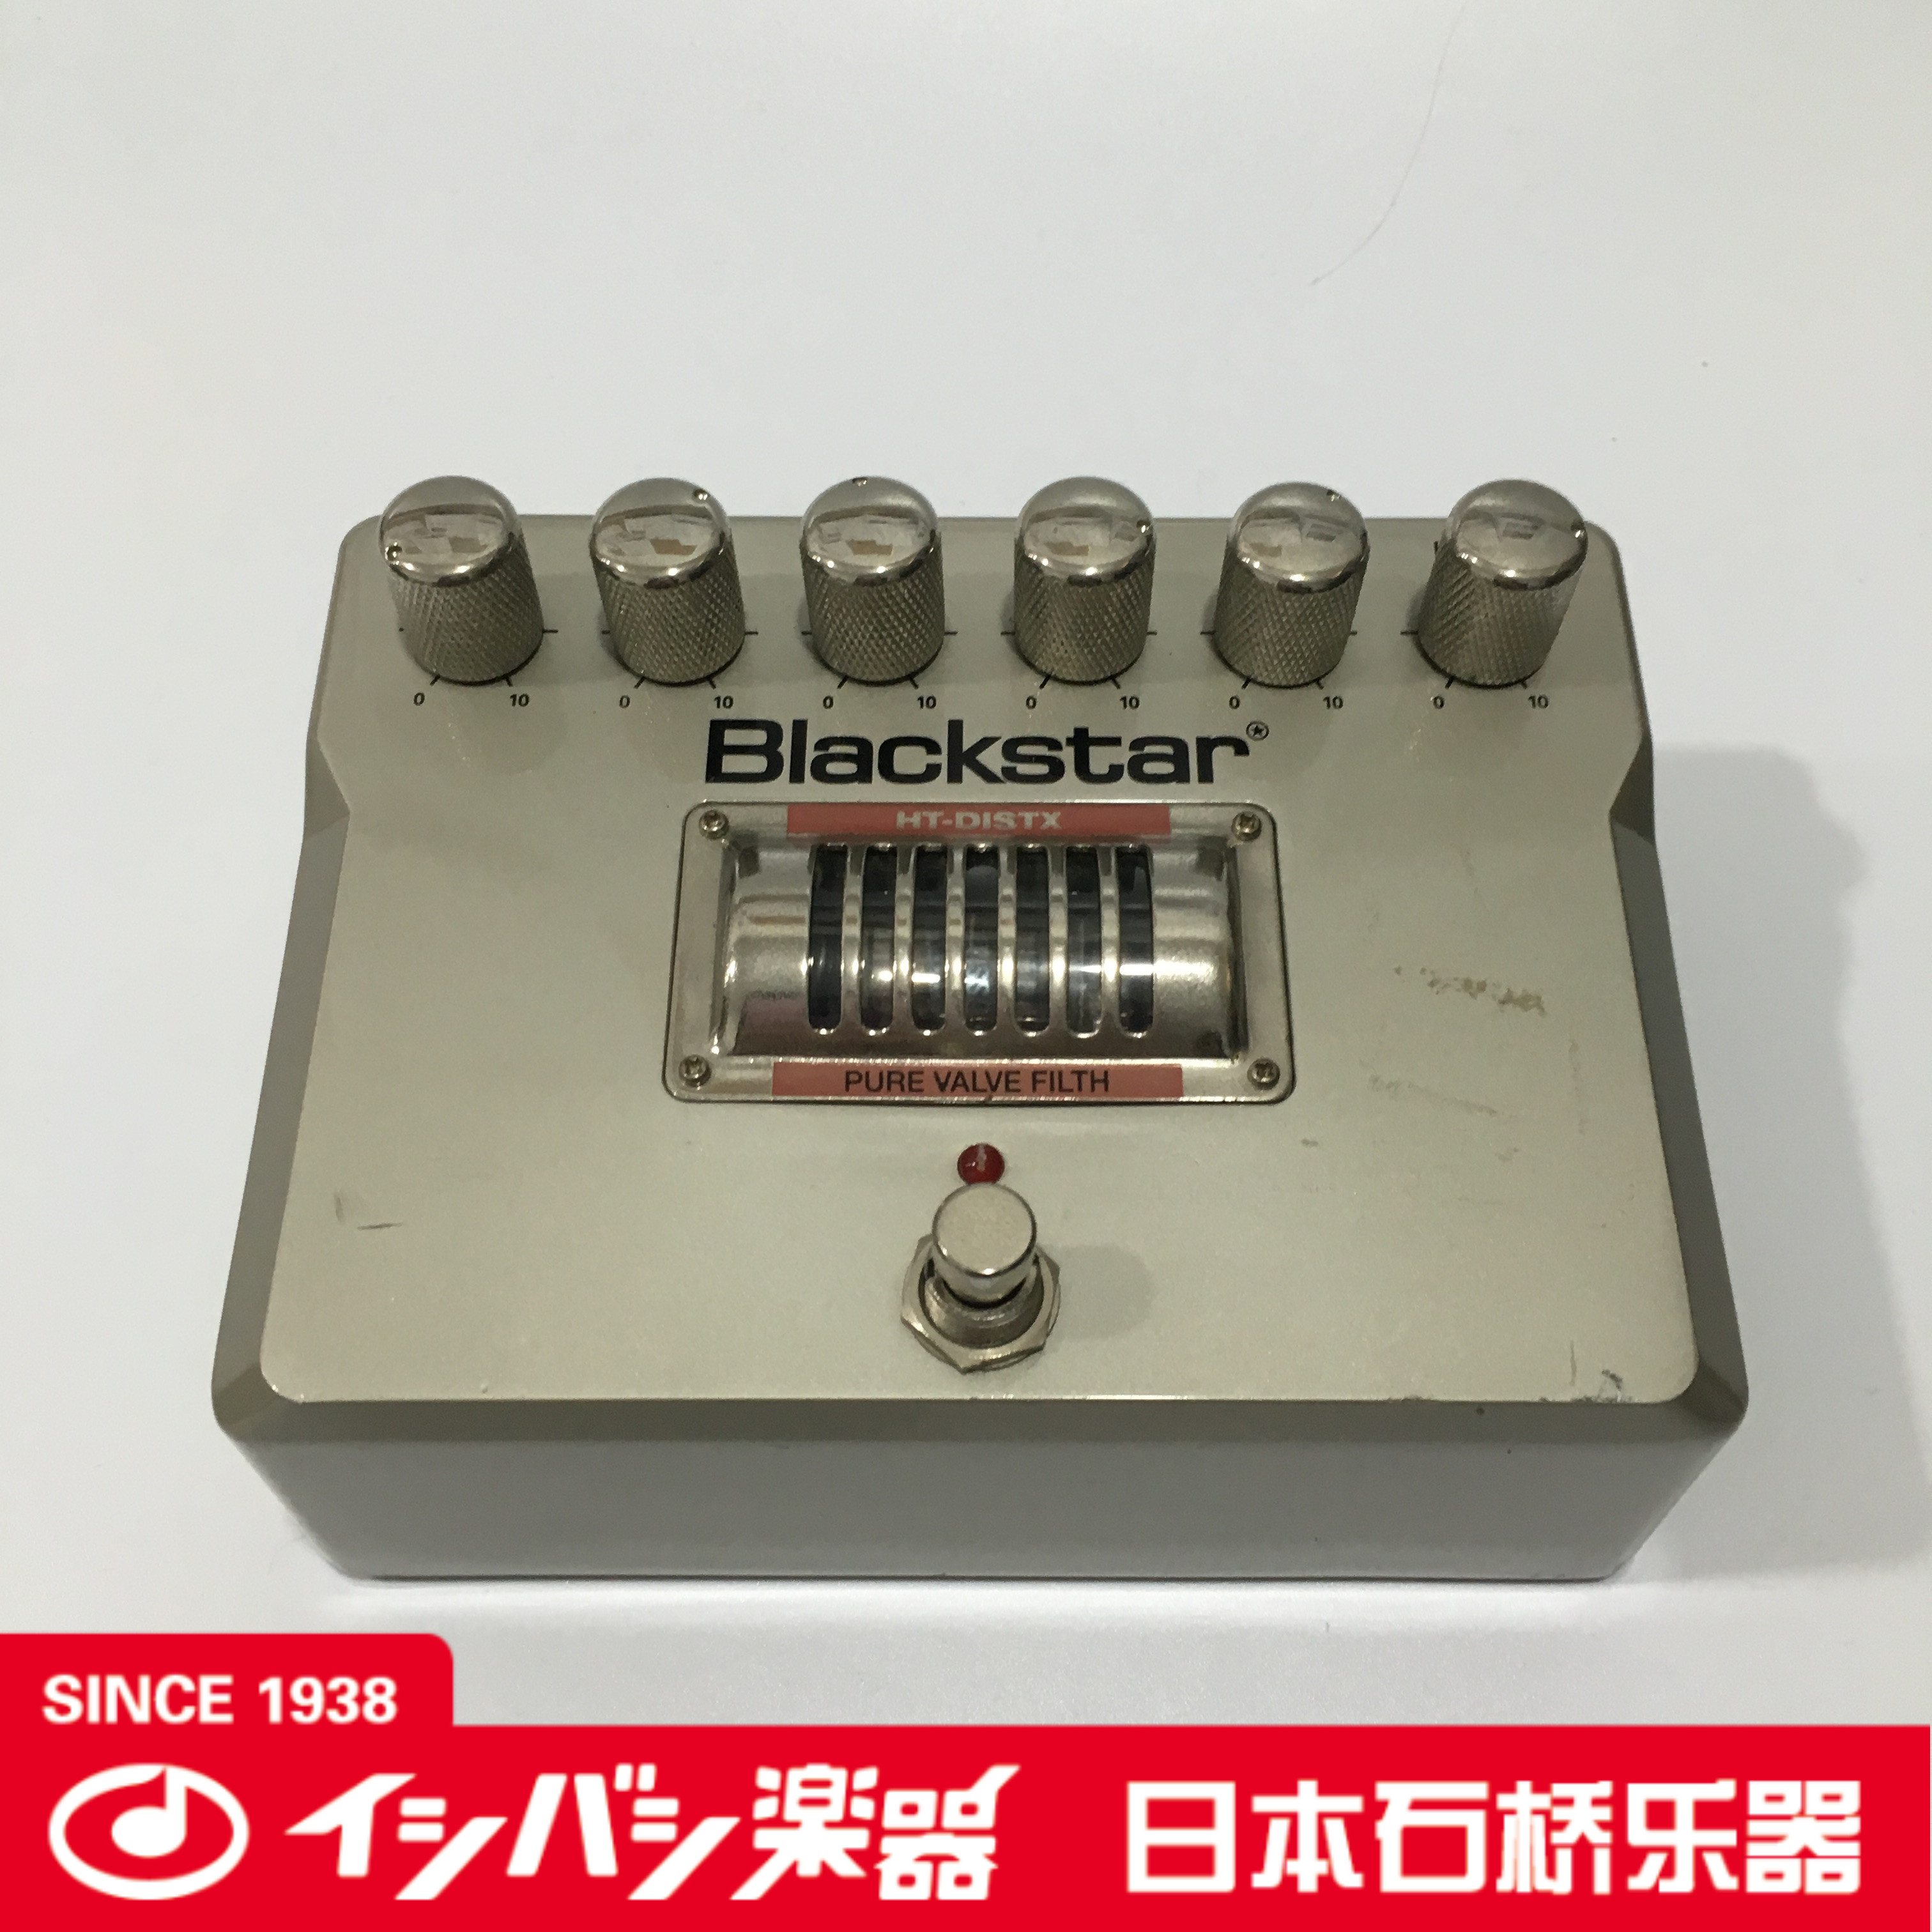 【石桥乐器】10月 blackstar 黑星 ht-distx 电子管增益失真单块